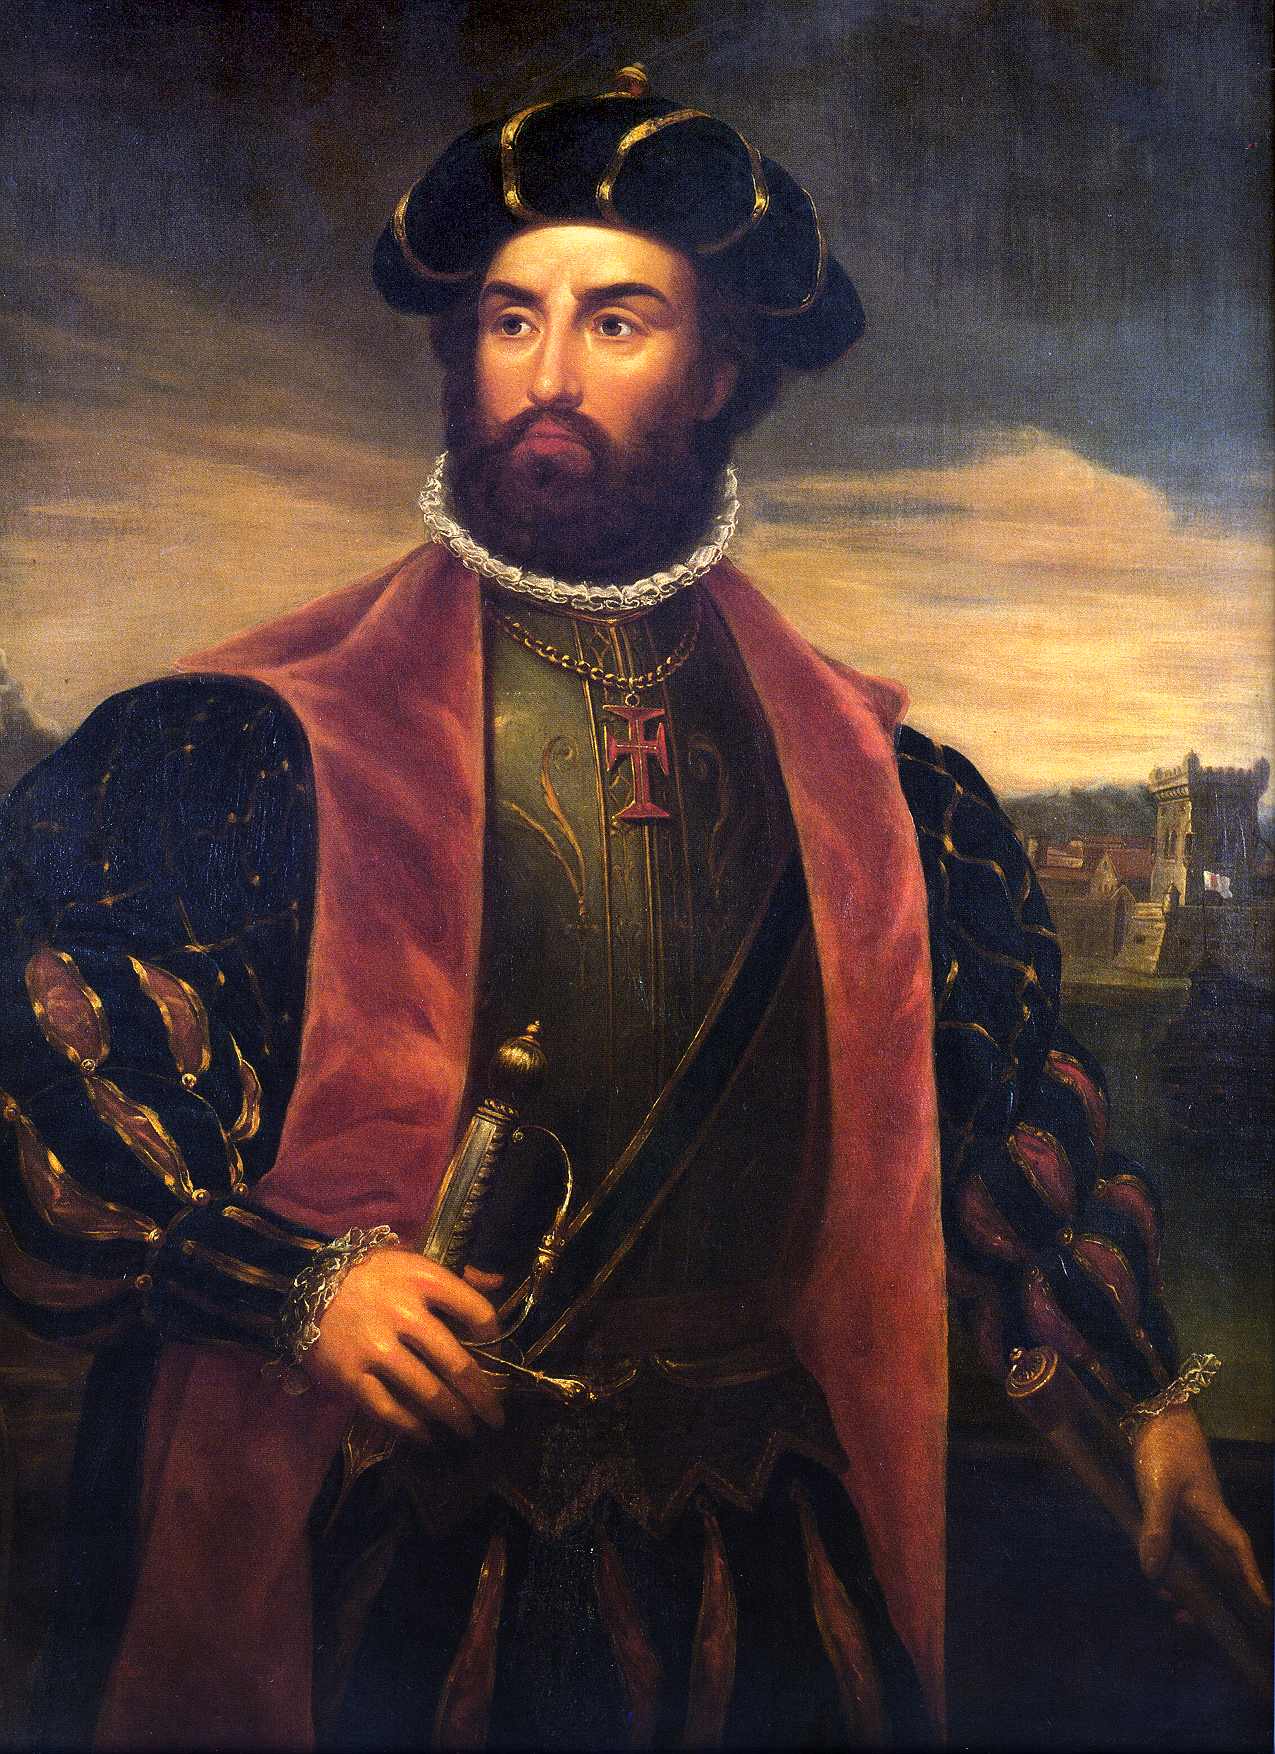 Jornalista do Mashable escreve sobre Vasco da Gama, o “explorador italiano”…